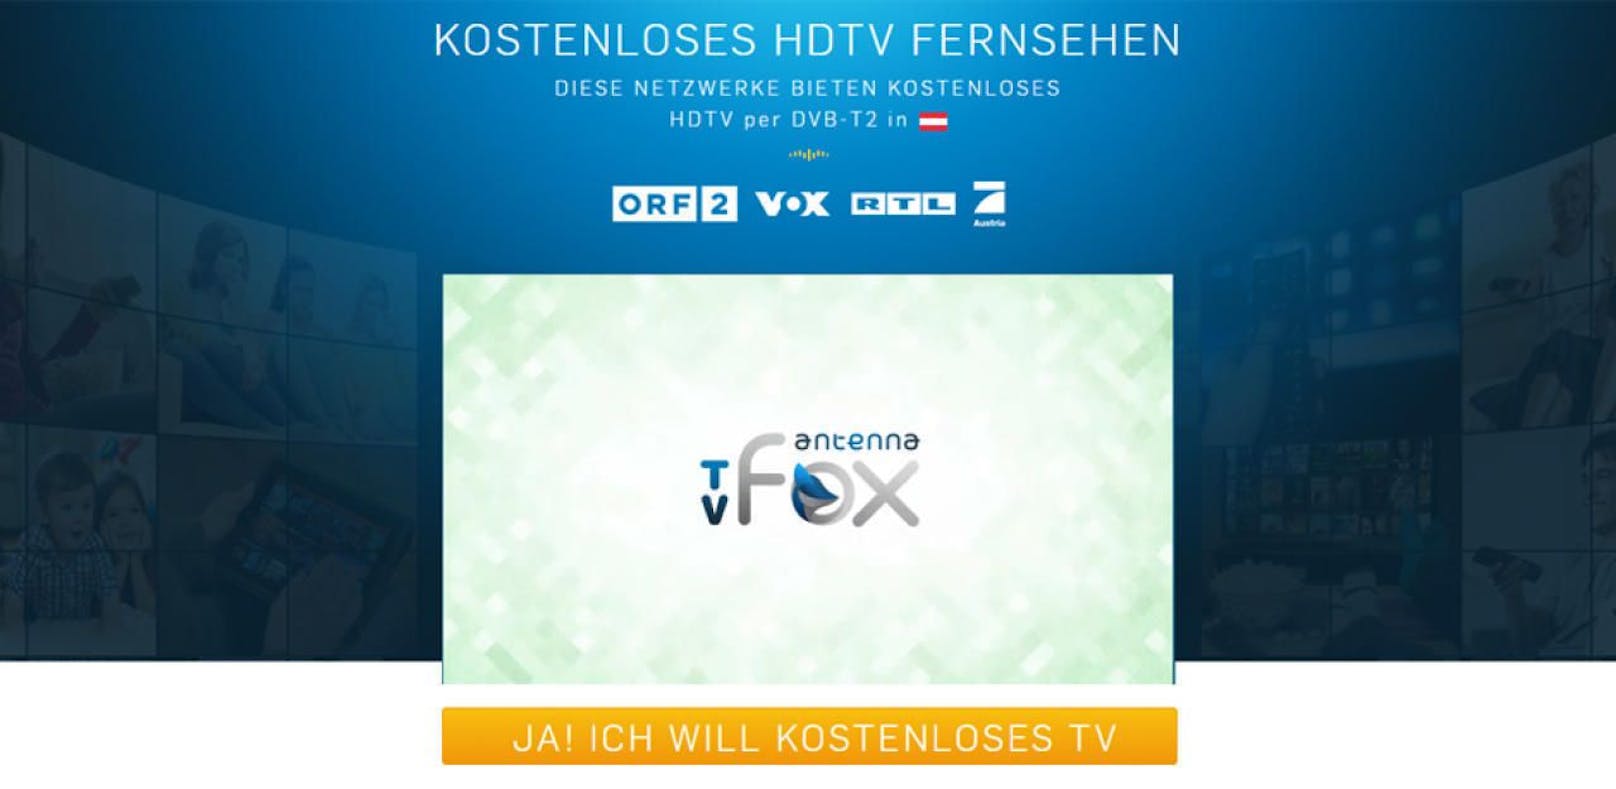 Das Angebot TvFox unter die Lupe genommen.